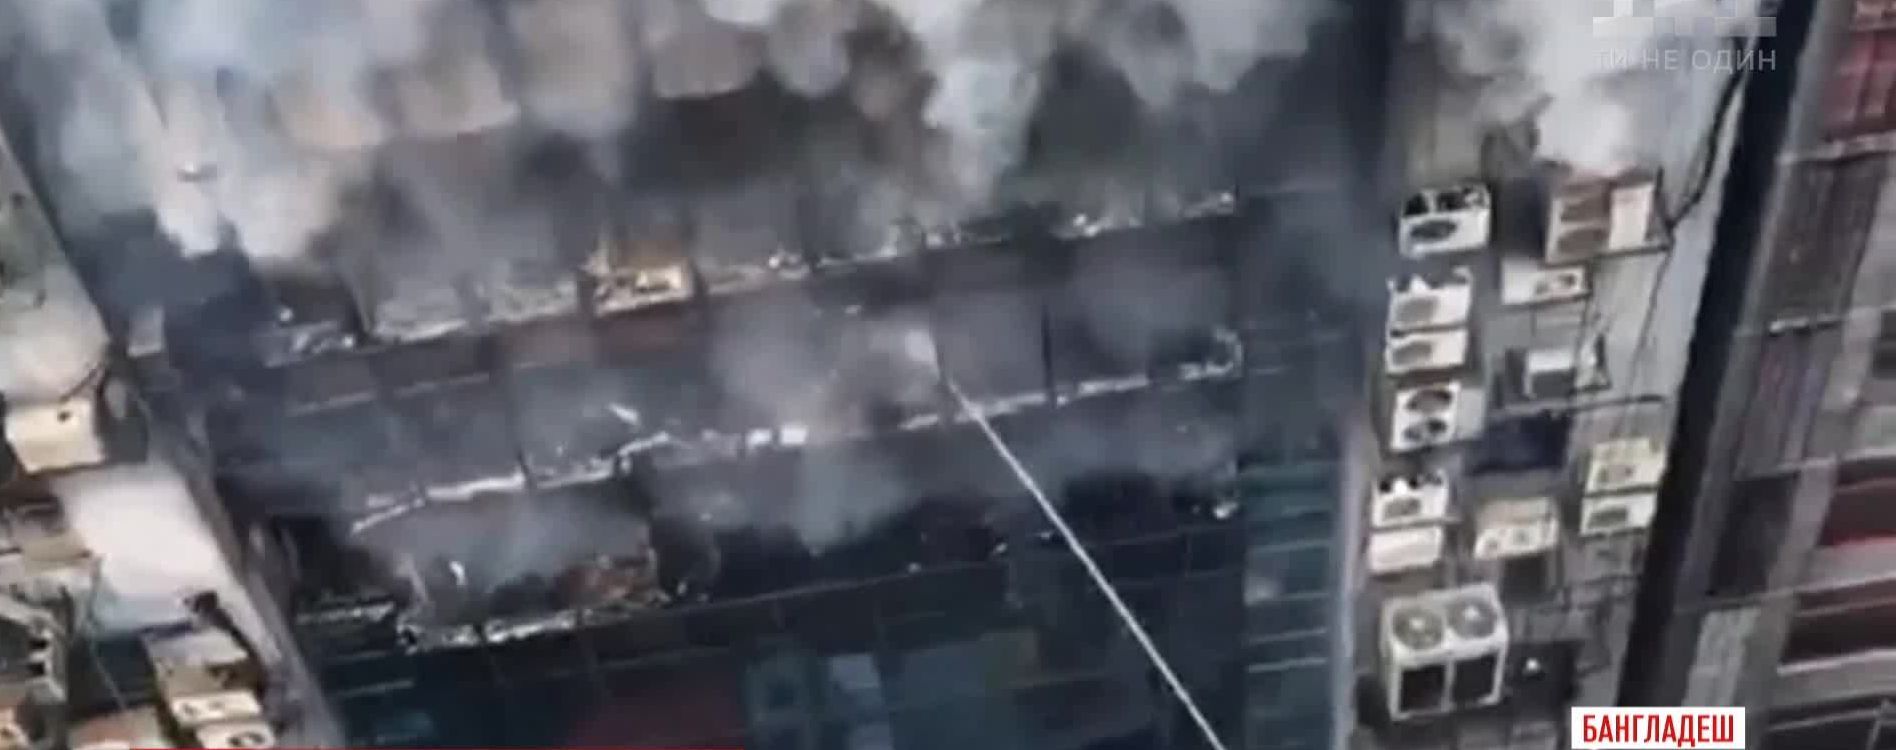 У Бангладеш спалахнув офісний центр: люди стрибали з вікон